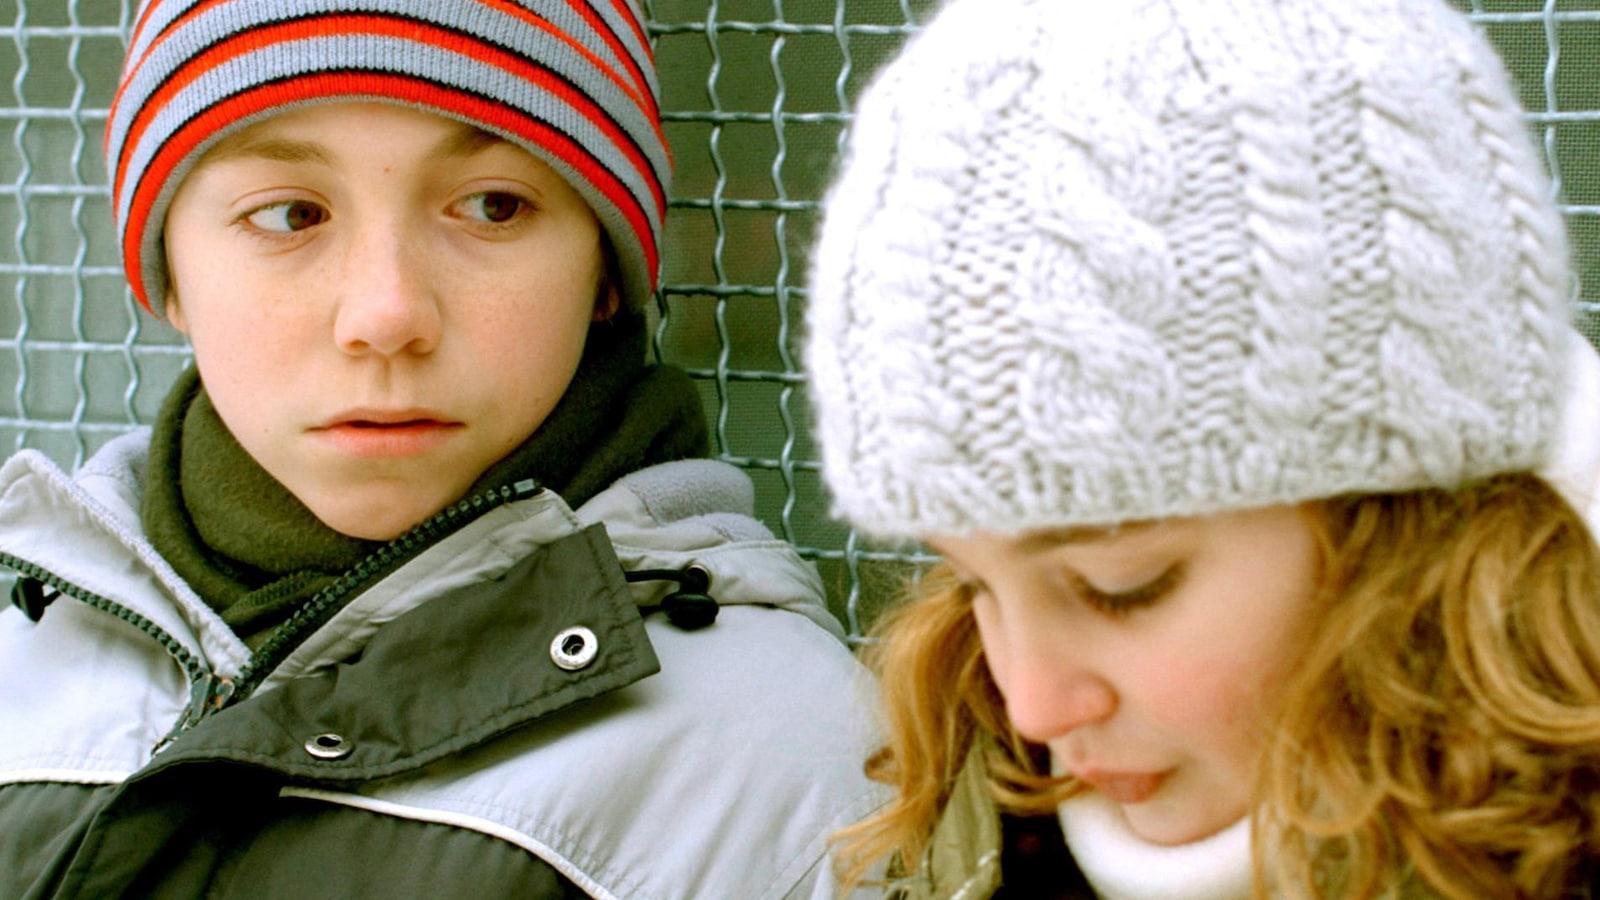 Devant un grillage, portant des habits de neige, un petit garçon regarde une petite fille.